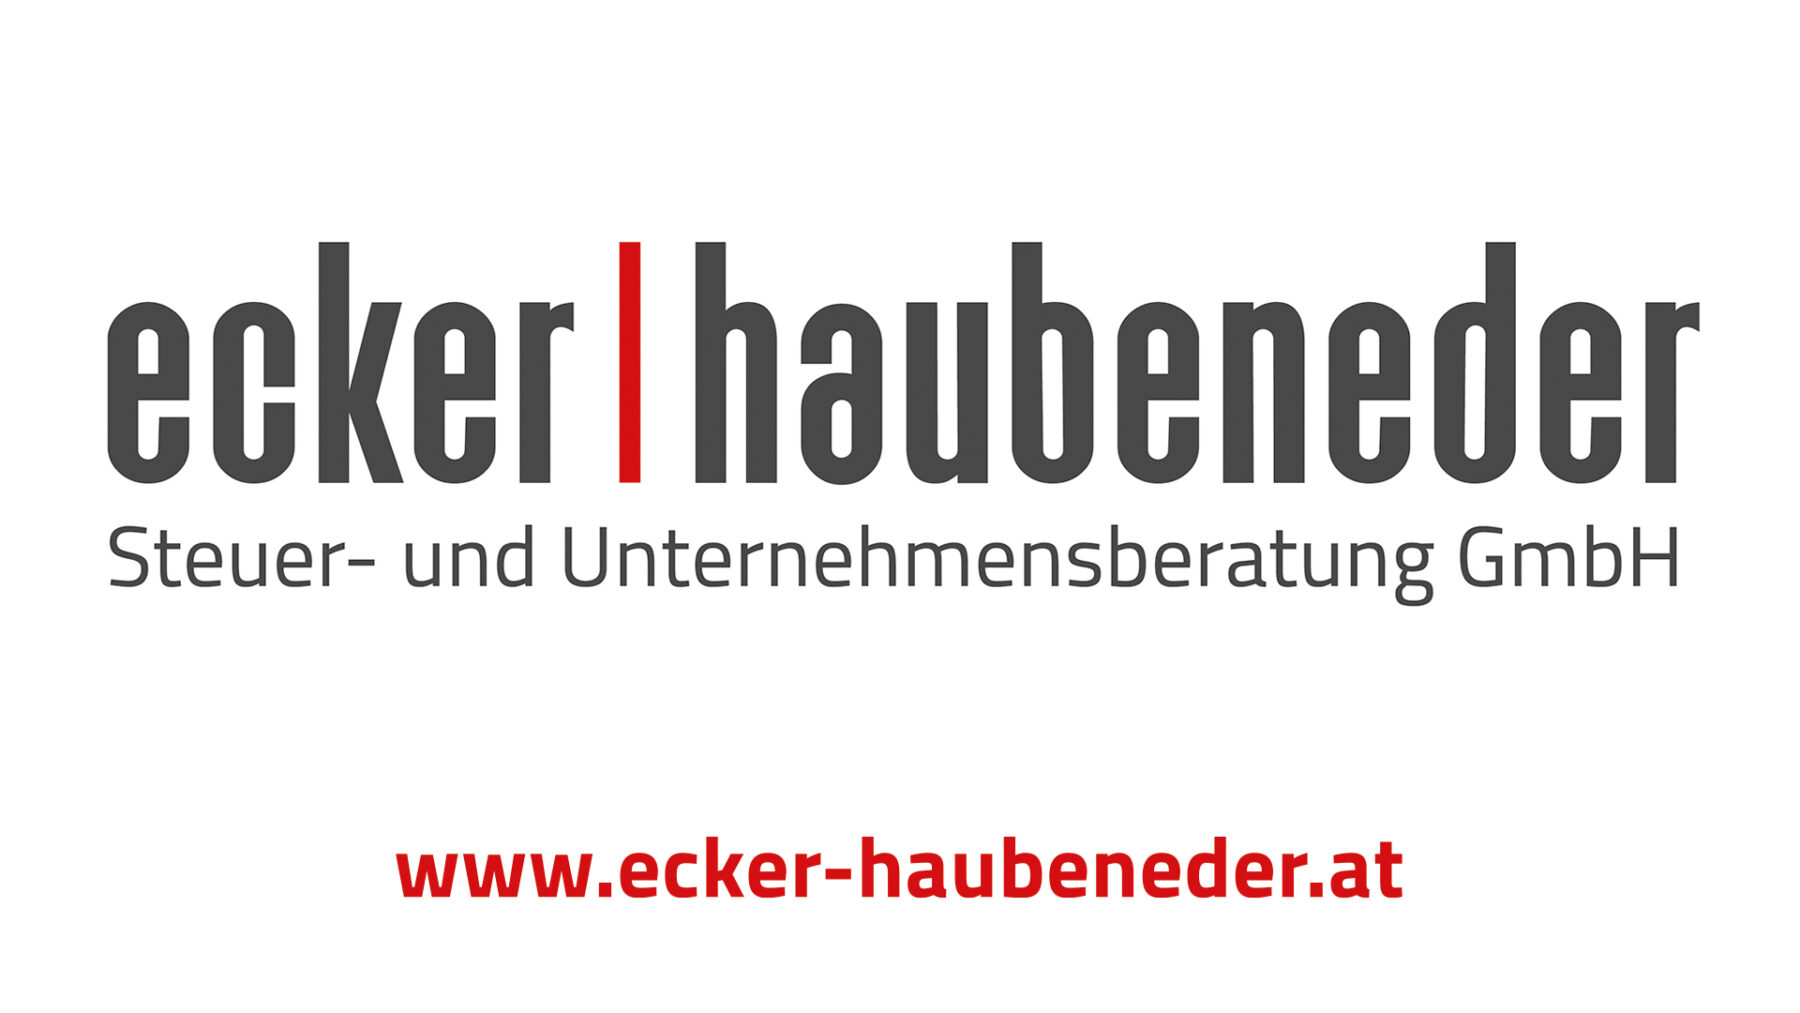 Ecker, Haubeneder Steuer- und Unternehmensberatungs GmbH